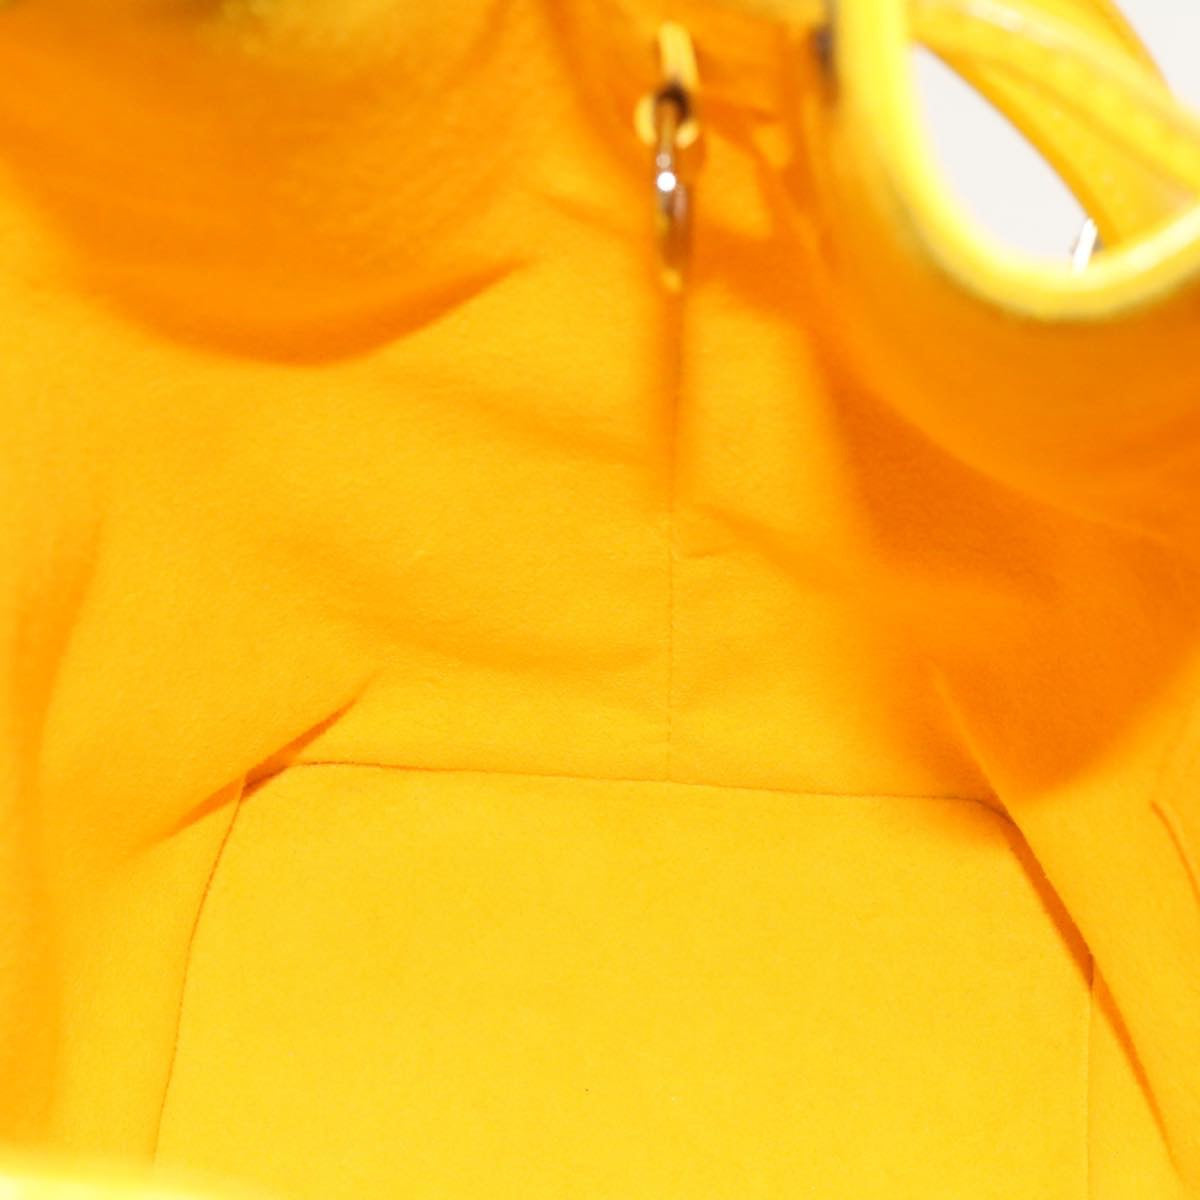 LOUIS VUITTON Epi Noe BB Shoulder Bag Yellow M40973 LV Auth 18421A